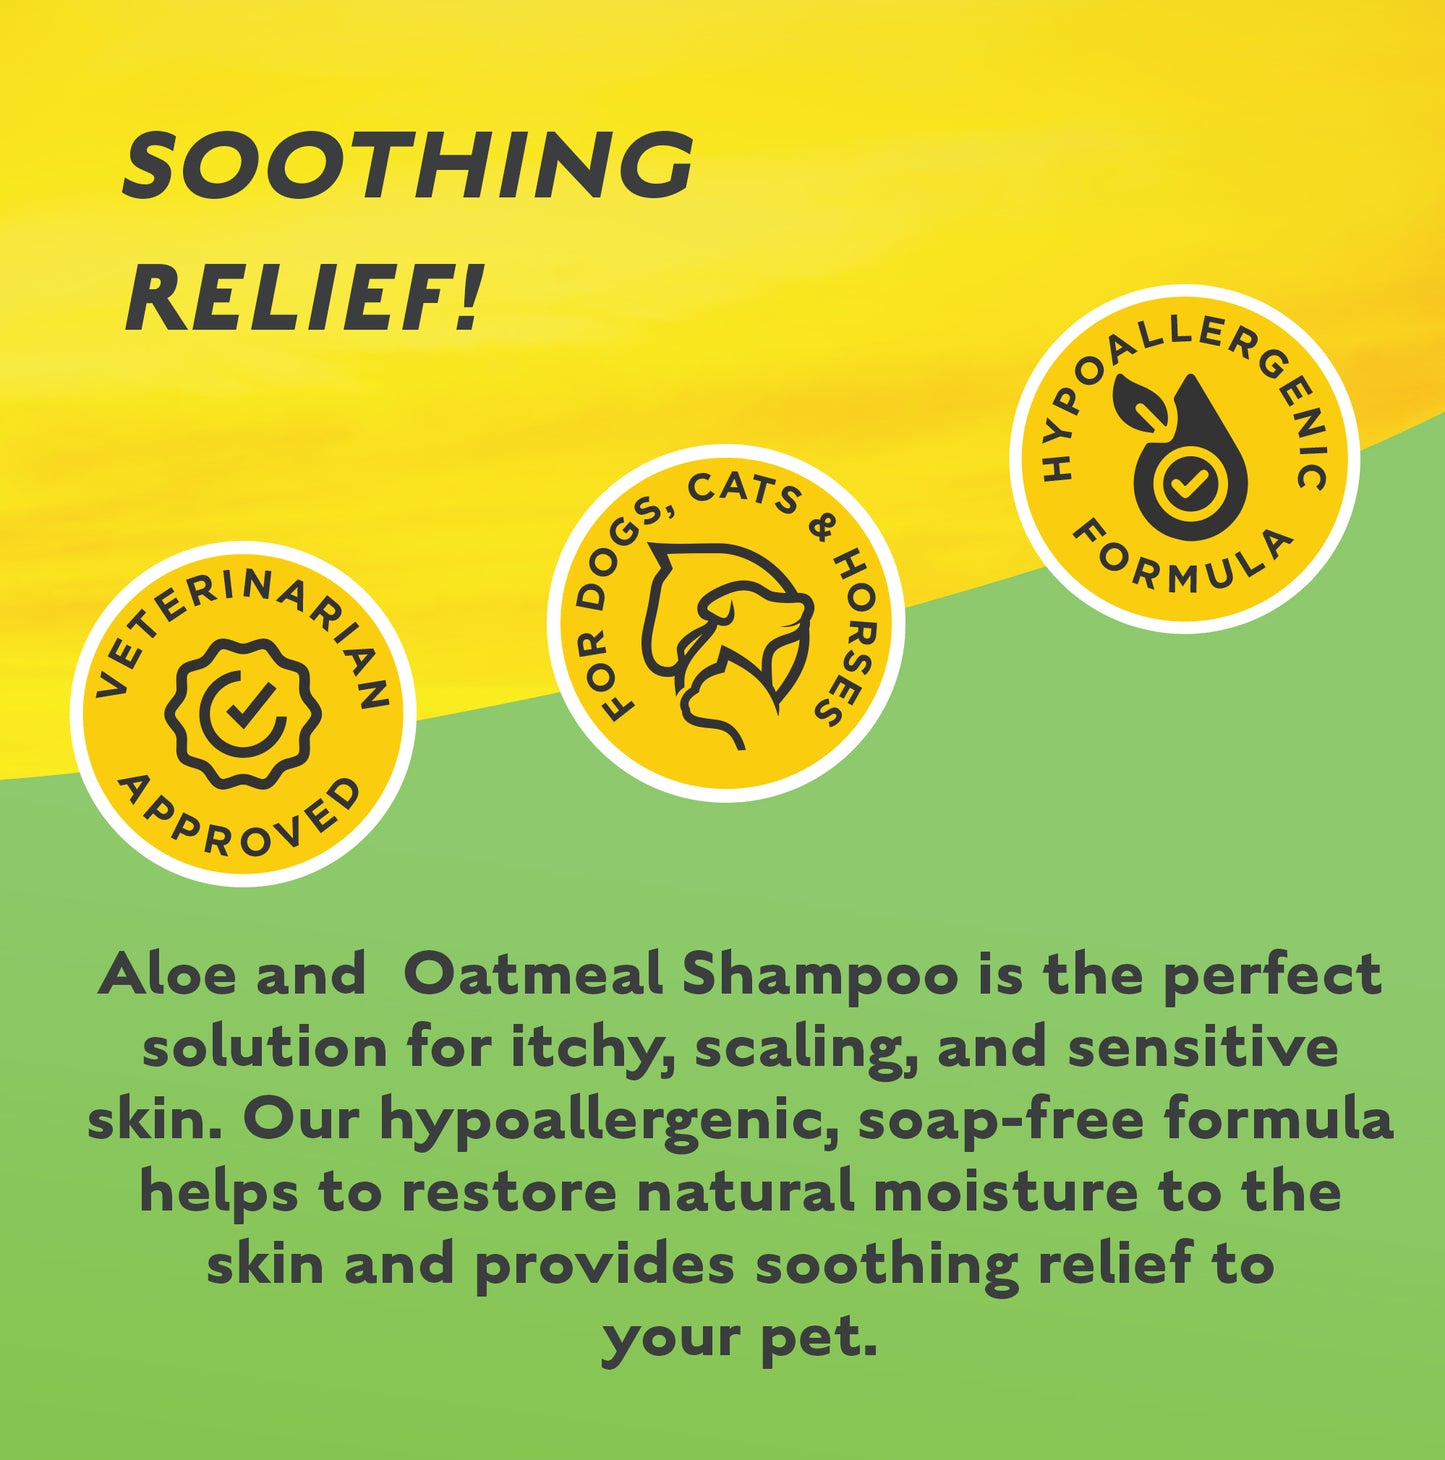 GROOMING-Cool & Calm Skin Relief! Aloe & Oatmeal Shampoo